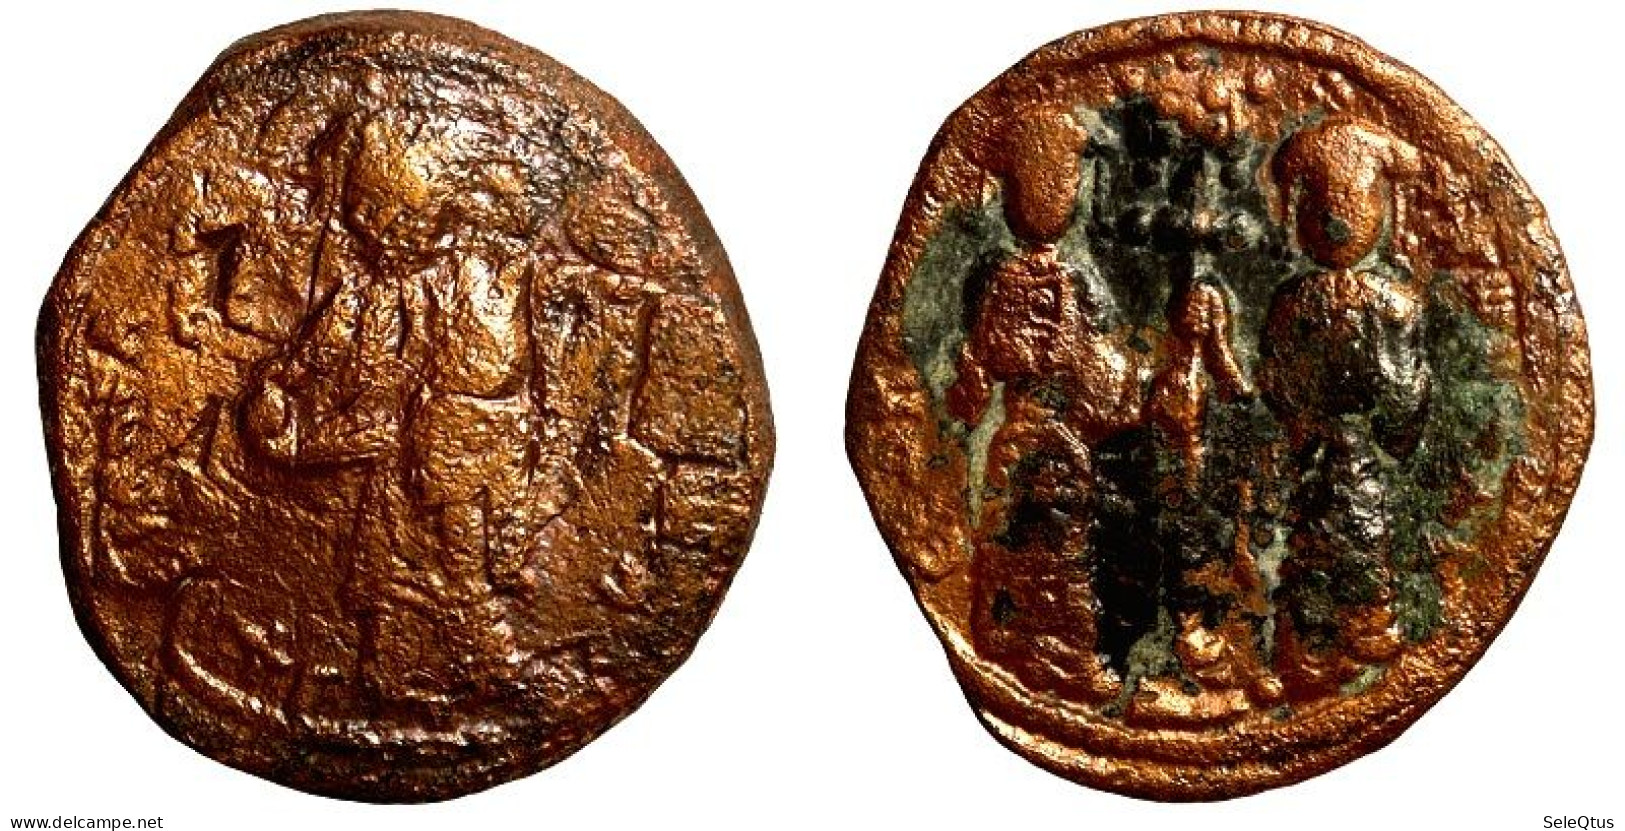 Monedas Antiguas - Ancient Coins (00109-002-1401) - Bizantinas